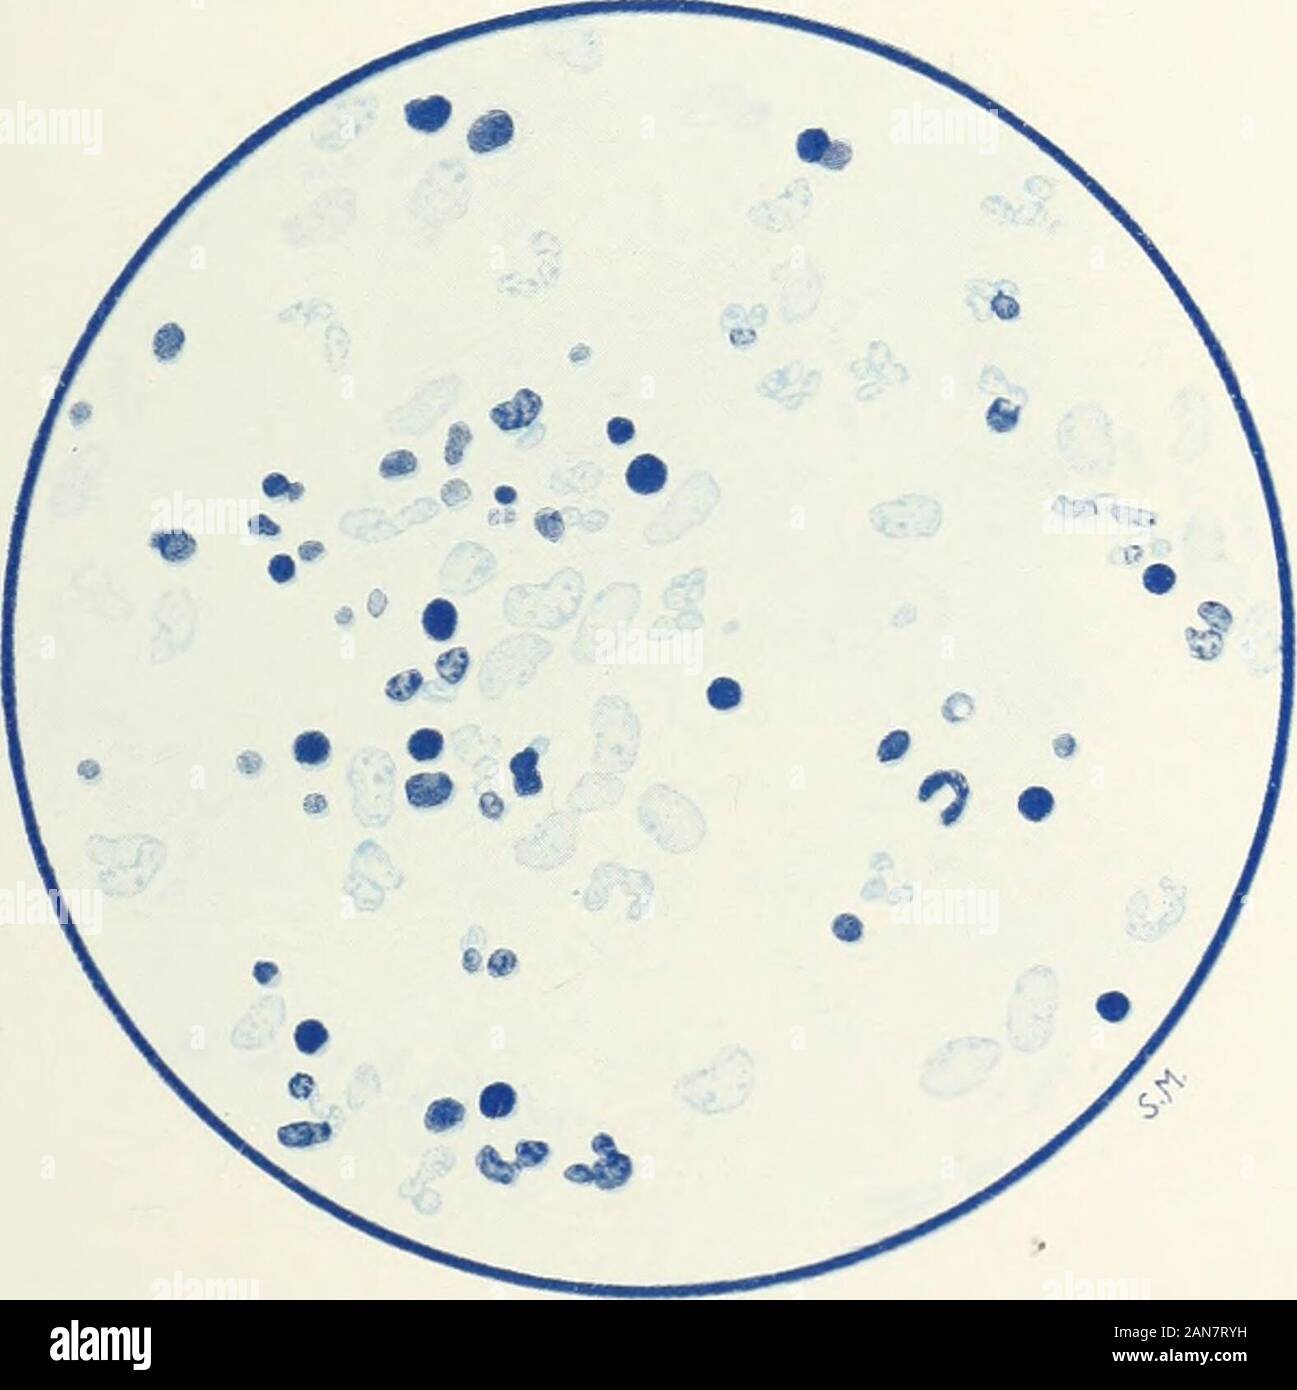 La rivista britannica di dermatologia . Fig. 5.-vista generale.. Fig. ti.-Sezione dalla reticulur parte della pelle,mostrando le spore di funghi. Macchia: Polychromaticmothylene-blu di glicerolo-etlier. Per illustrare il prof. E. BRUUSGAARDS ARTICOLO SU H/EM ATOG ENOUSINFECTION IN TRICHOPHY TIA. HJIMATOGENOUS INFEZIONE IN TRICHOPHYTIA. 157 identico a quello nel fuoco primario sulla pelle. Da ogni unadelle queste infiltrazioni un trichophyton g-ypsenni che la maggior parte nearlycori-esponded al gruppo di un asteroide è stato coltivato su maltosio andglucose agar. Per dirla breve, abbiamo a che fare con un caso di trichophytiaprof Foto Stock